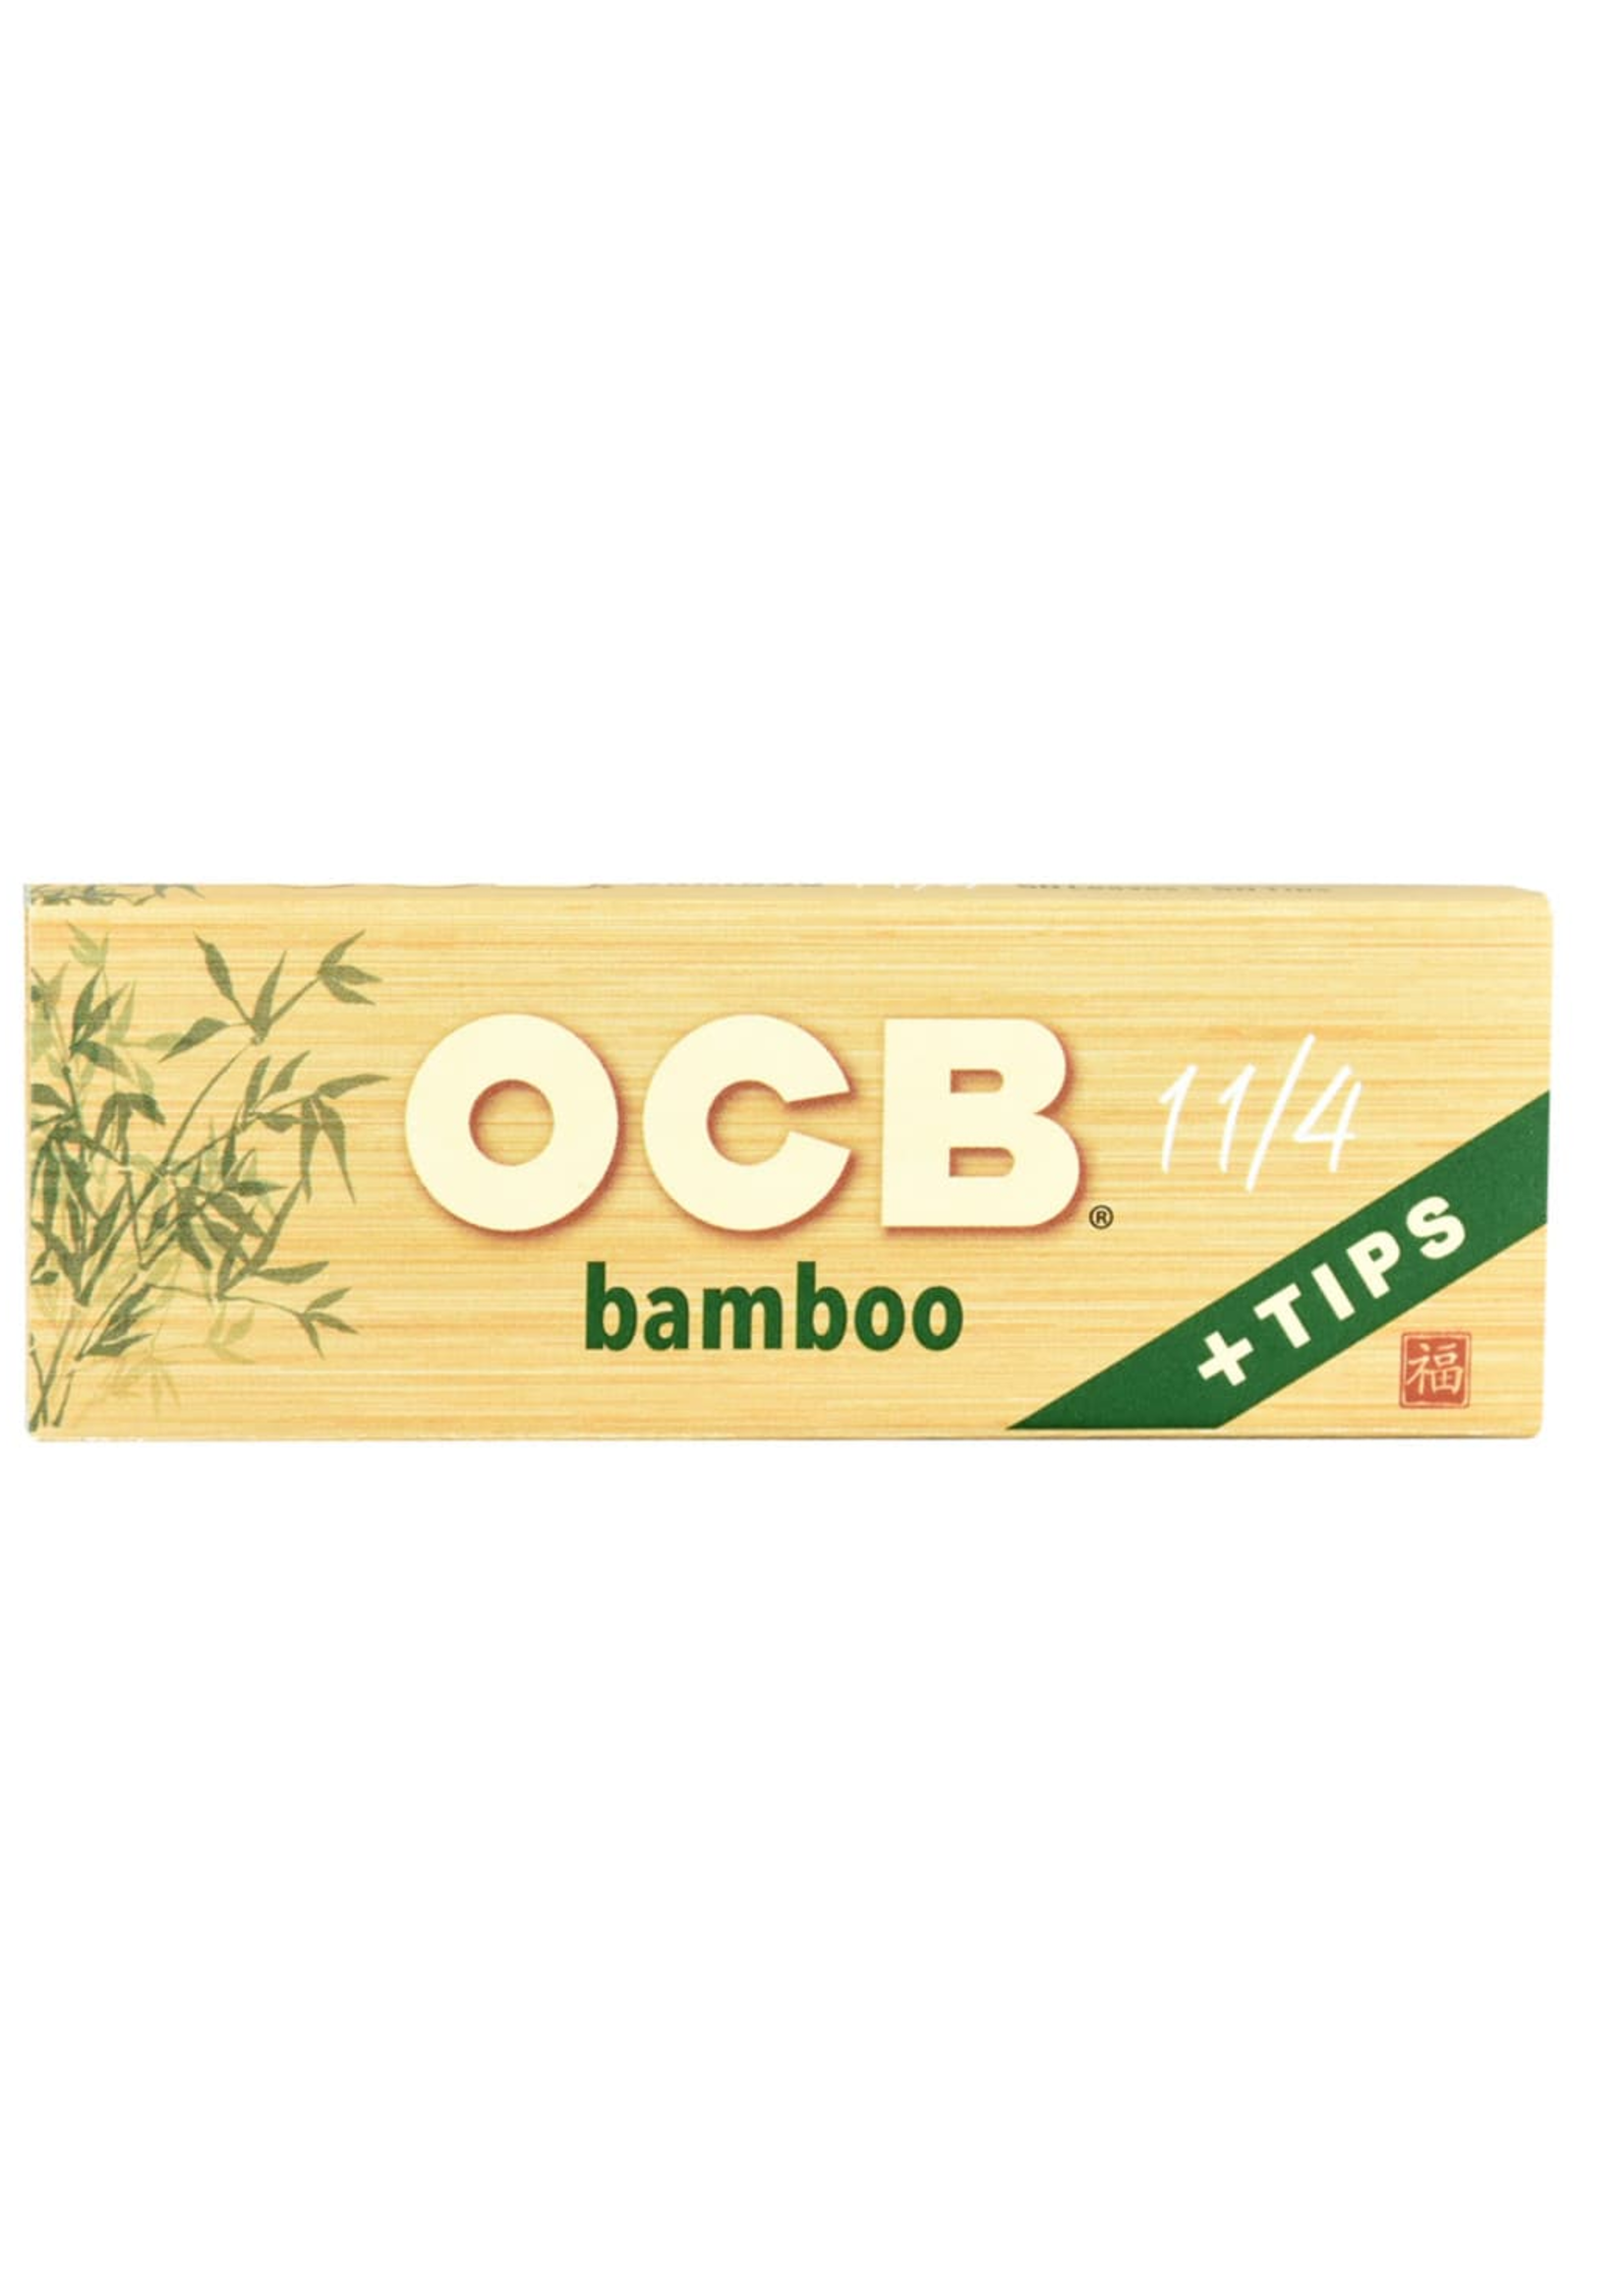 OCB OCB BAMBOO 1 1/4 + TIPS